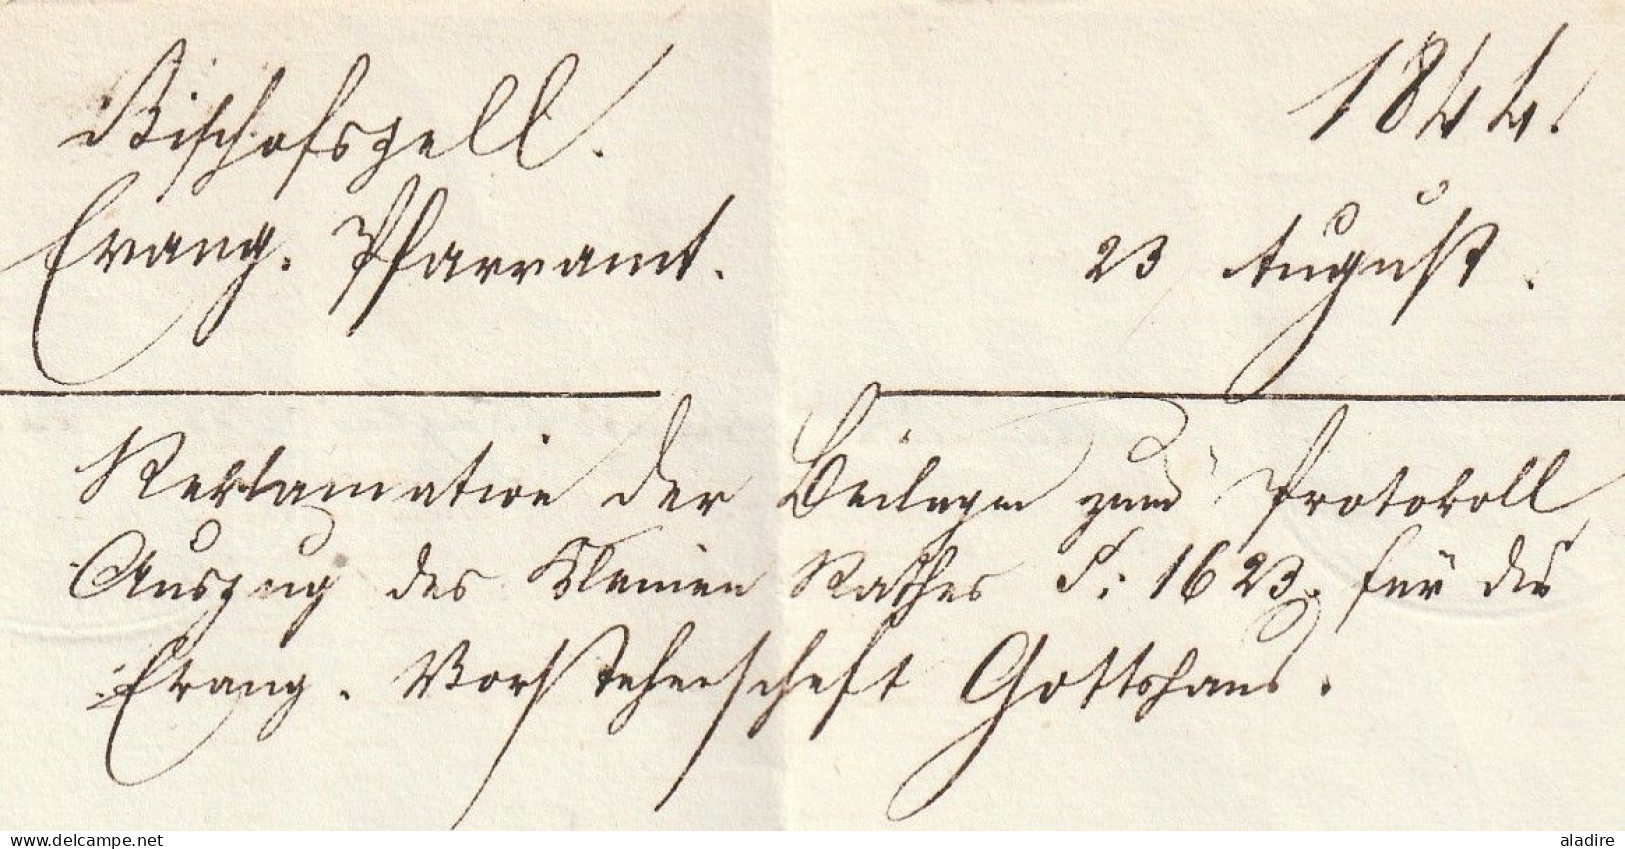 1844 - Lettre pliée de BISCHOFEZELL, Bishopfzell, Thurgovie vers Frauenfeld - cachet à date d'arrivée